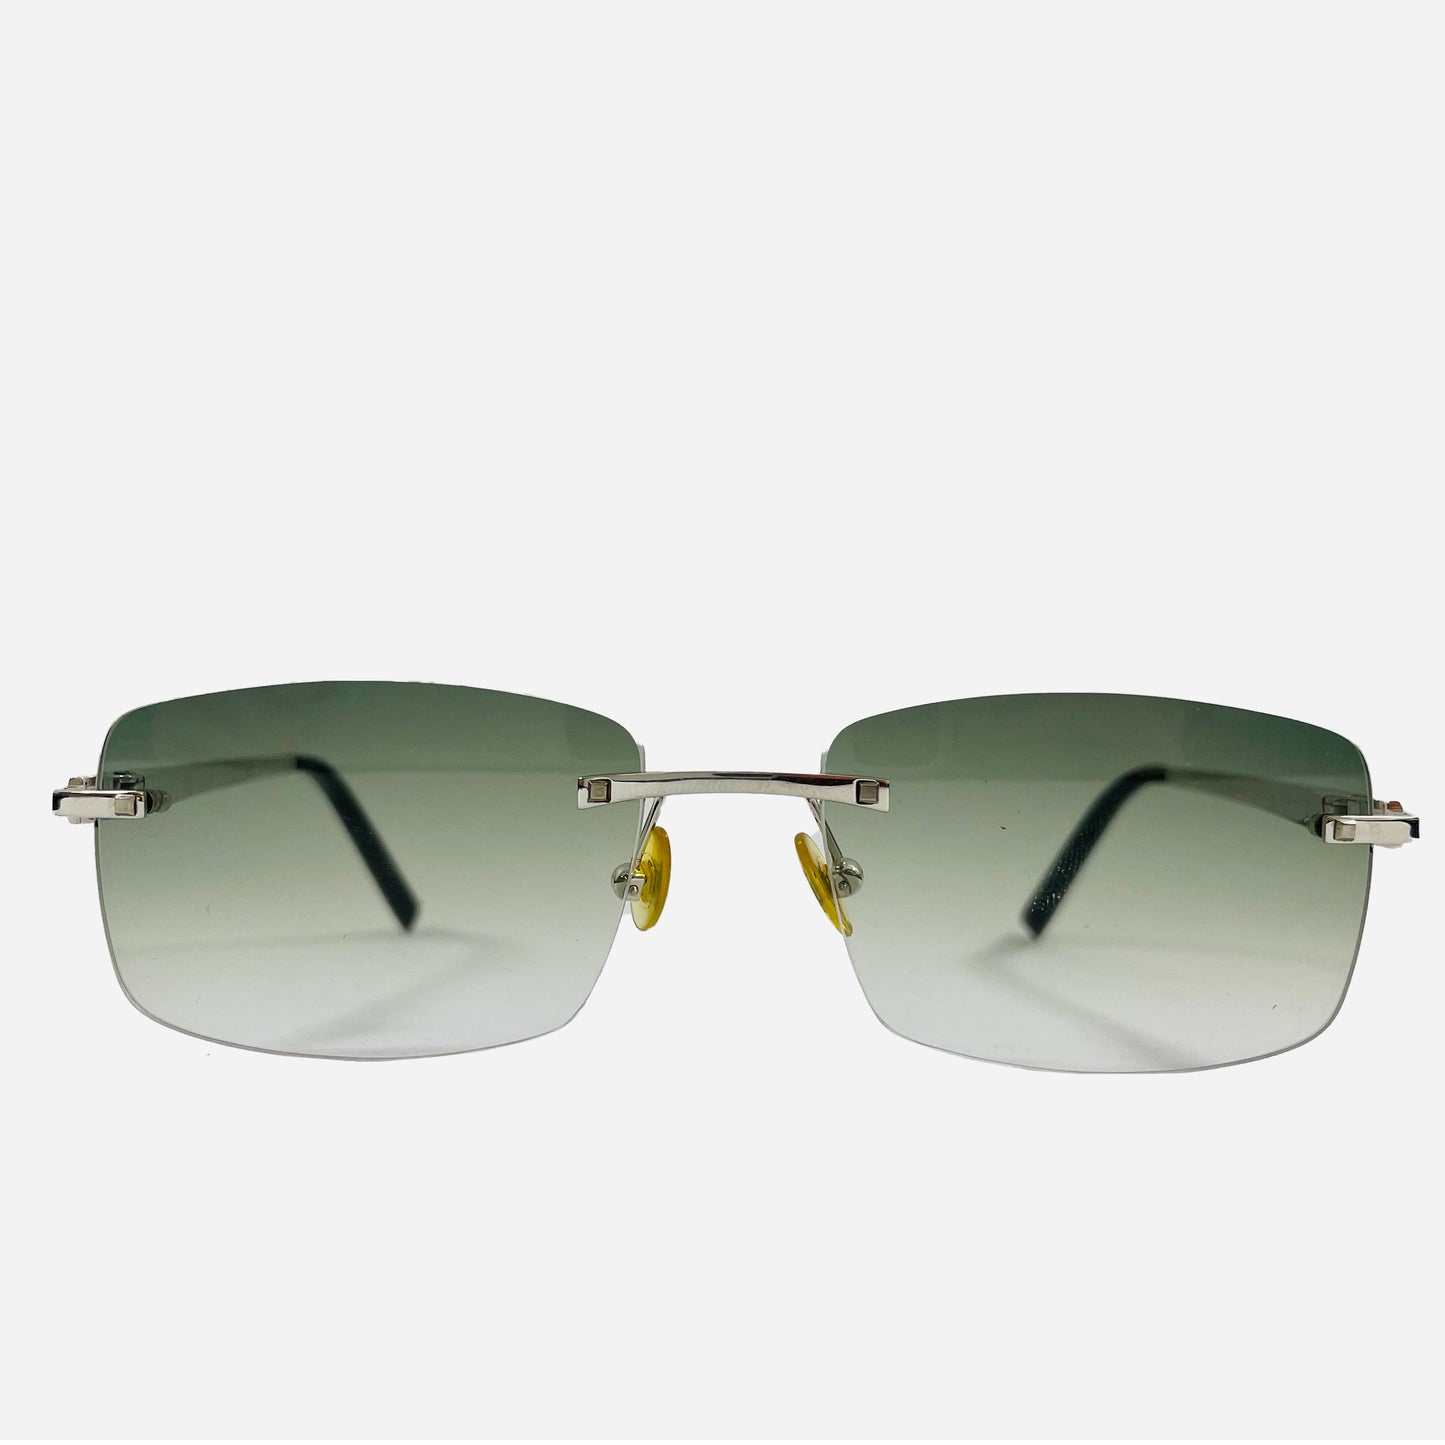 Fred-Paris-Sonnenbrille-Sunglasses-Jamaique-rimless-rahmenlose-Sonnenbrille-the-seekers